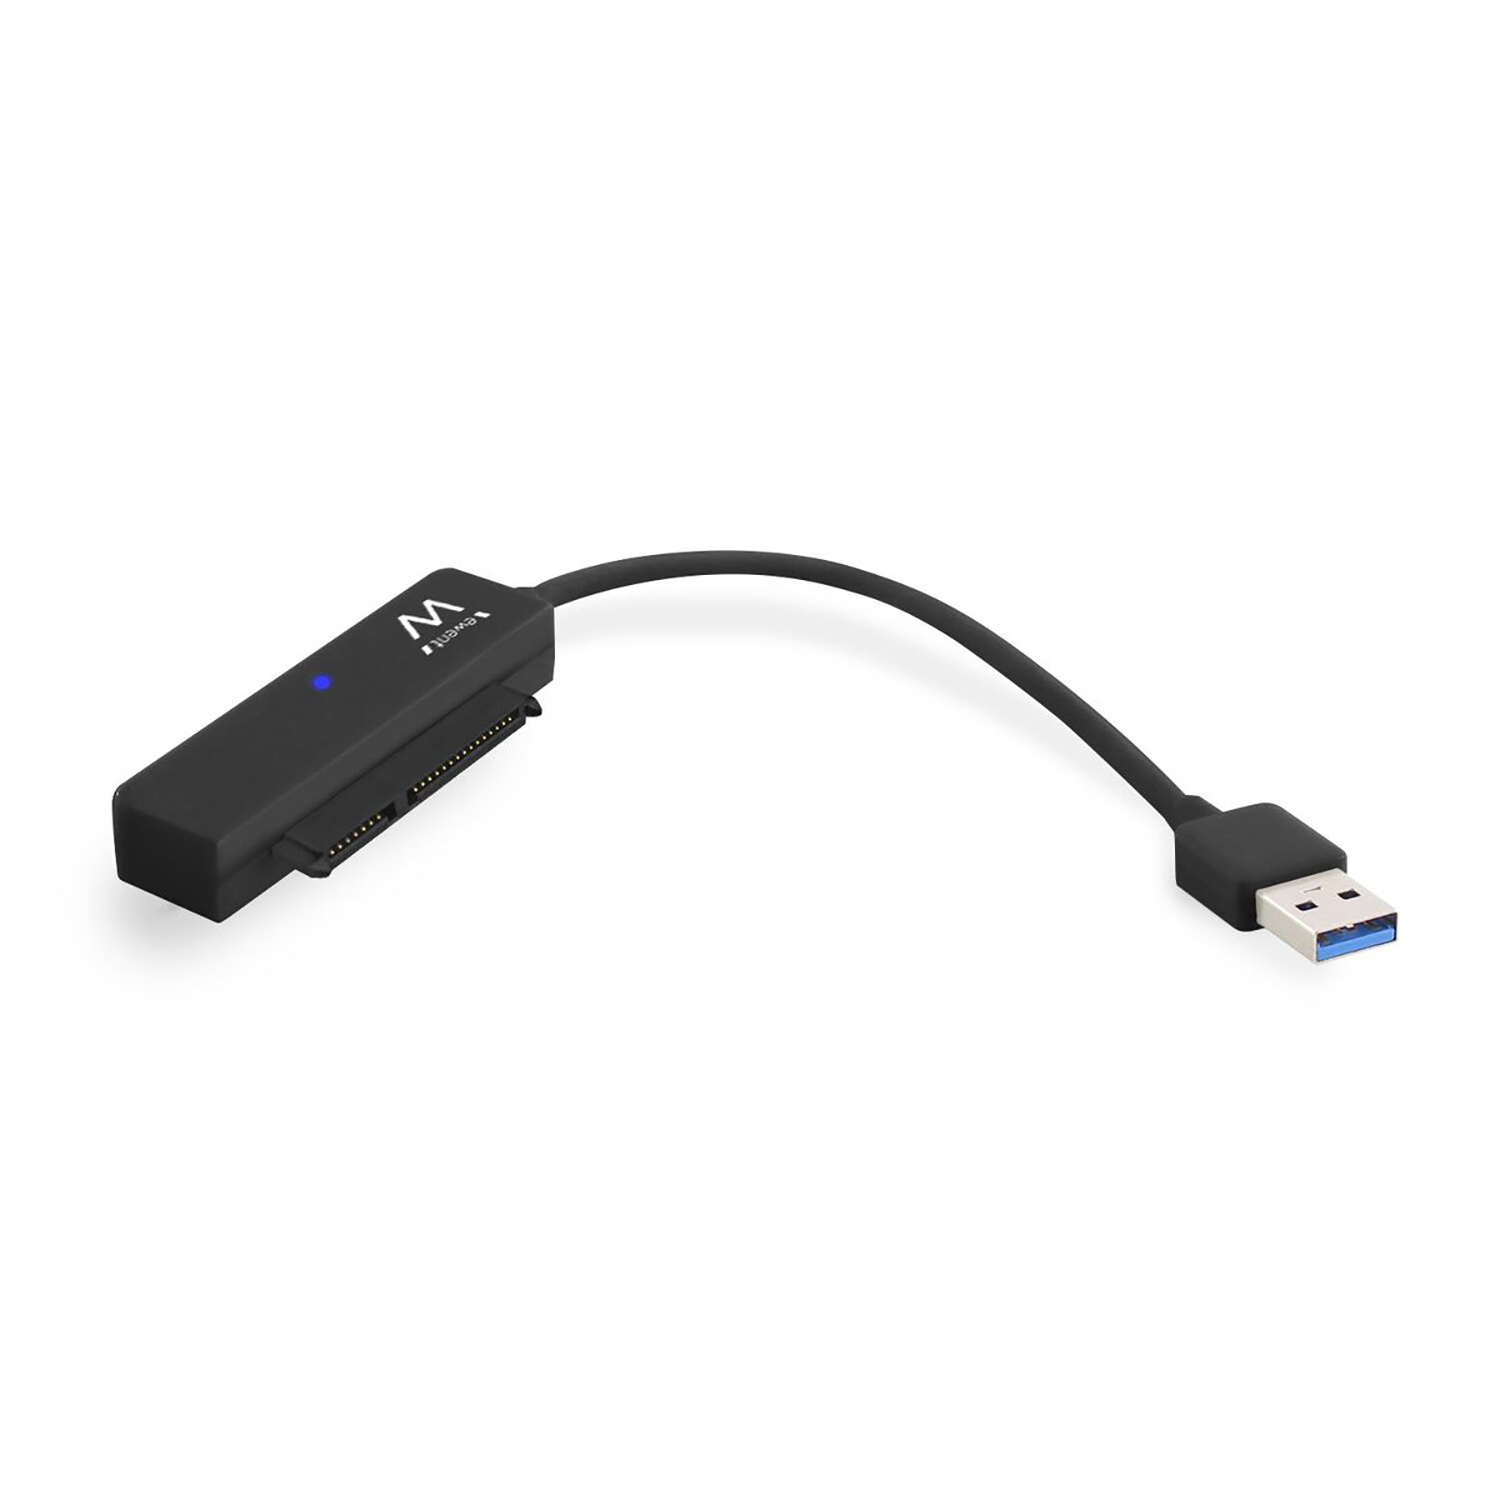 Continuación semanal total USB 3.1 a Cable adaptador de disco duro SATA 2.5 inch para SSD / HDD |  Ewent Eminent